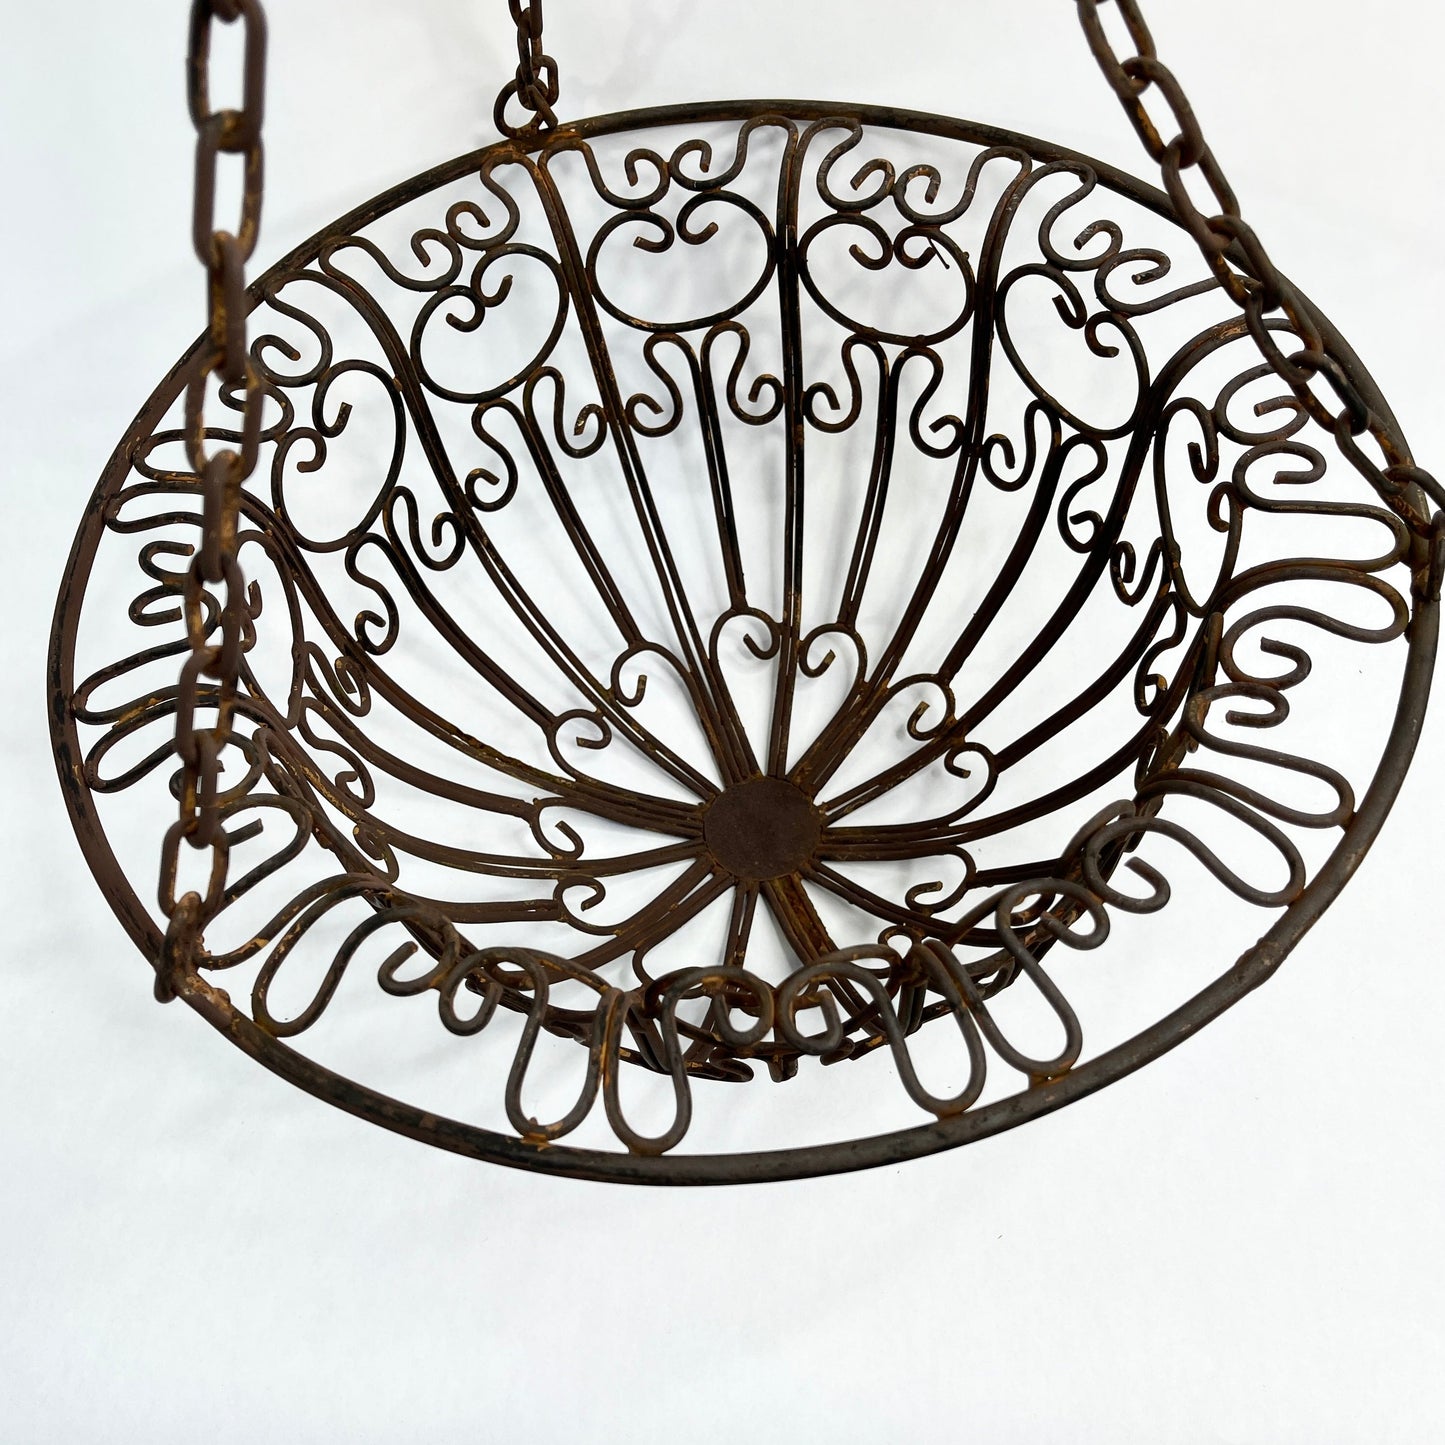 Vintage Planter Basket - Hanging wrought iron